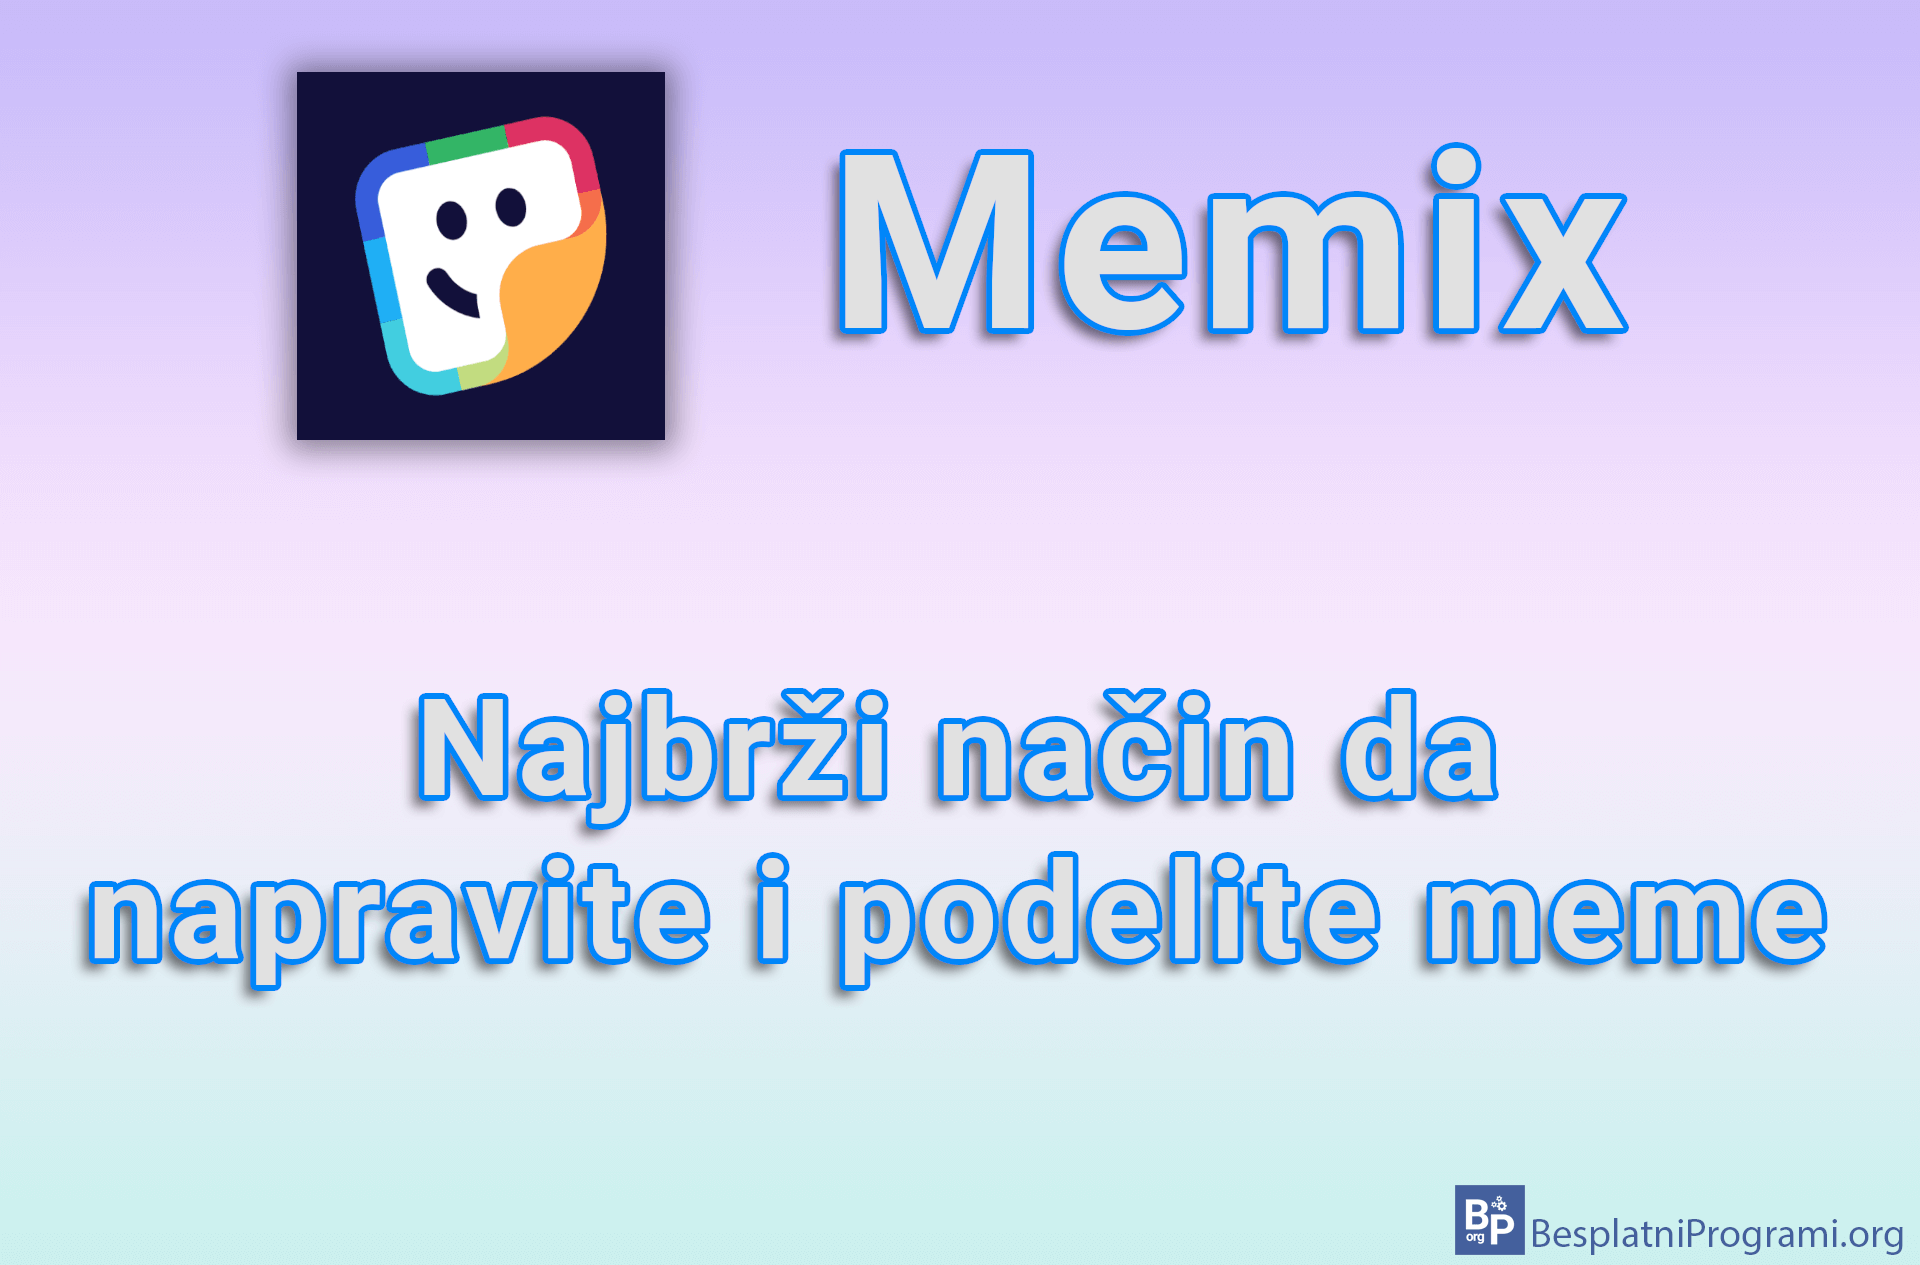 Memix - Najbrži način da napravite i podelite meme